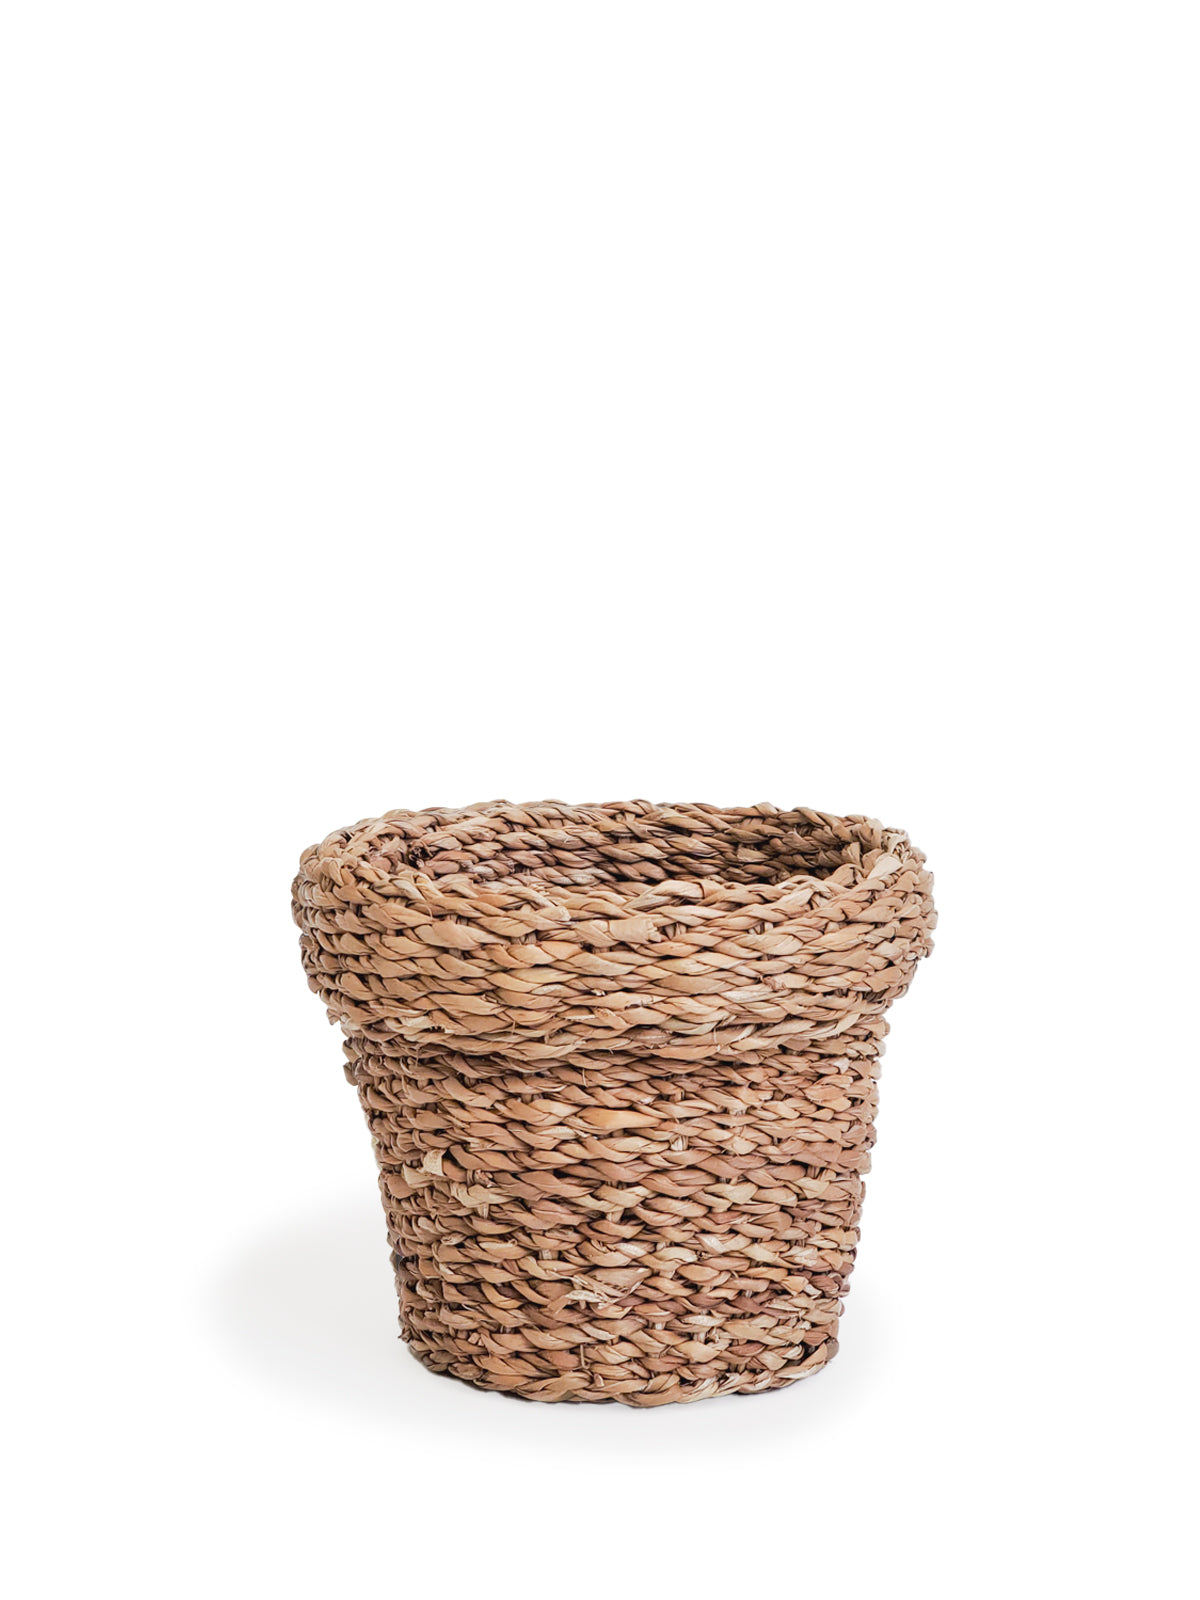 Nesting Plant Basket-7